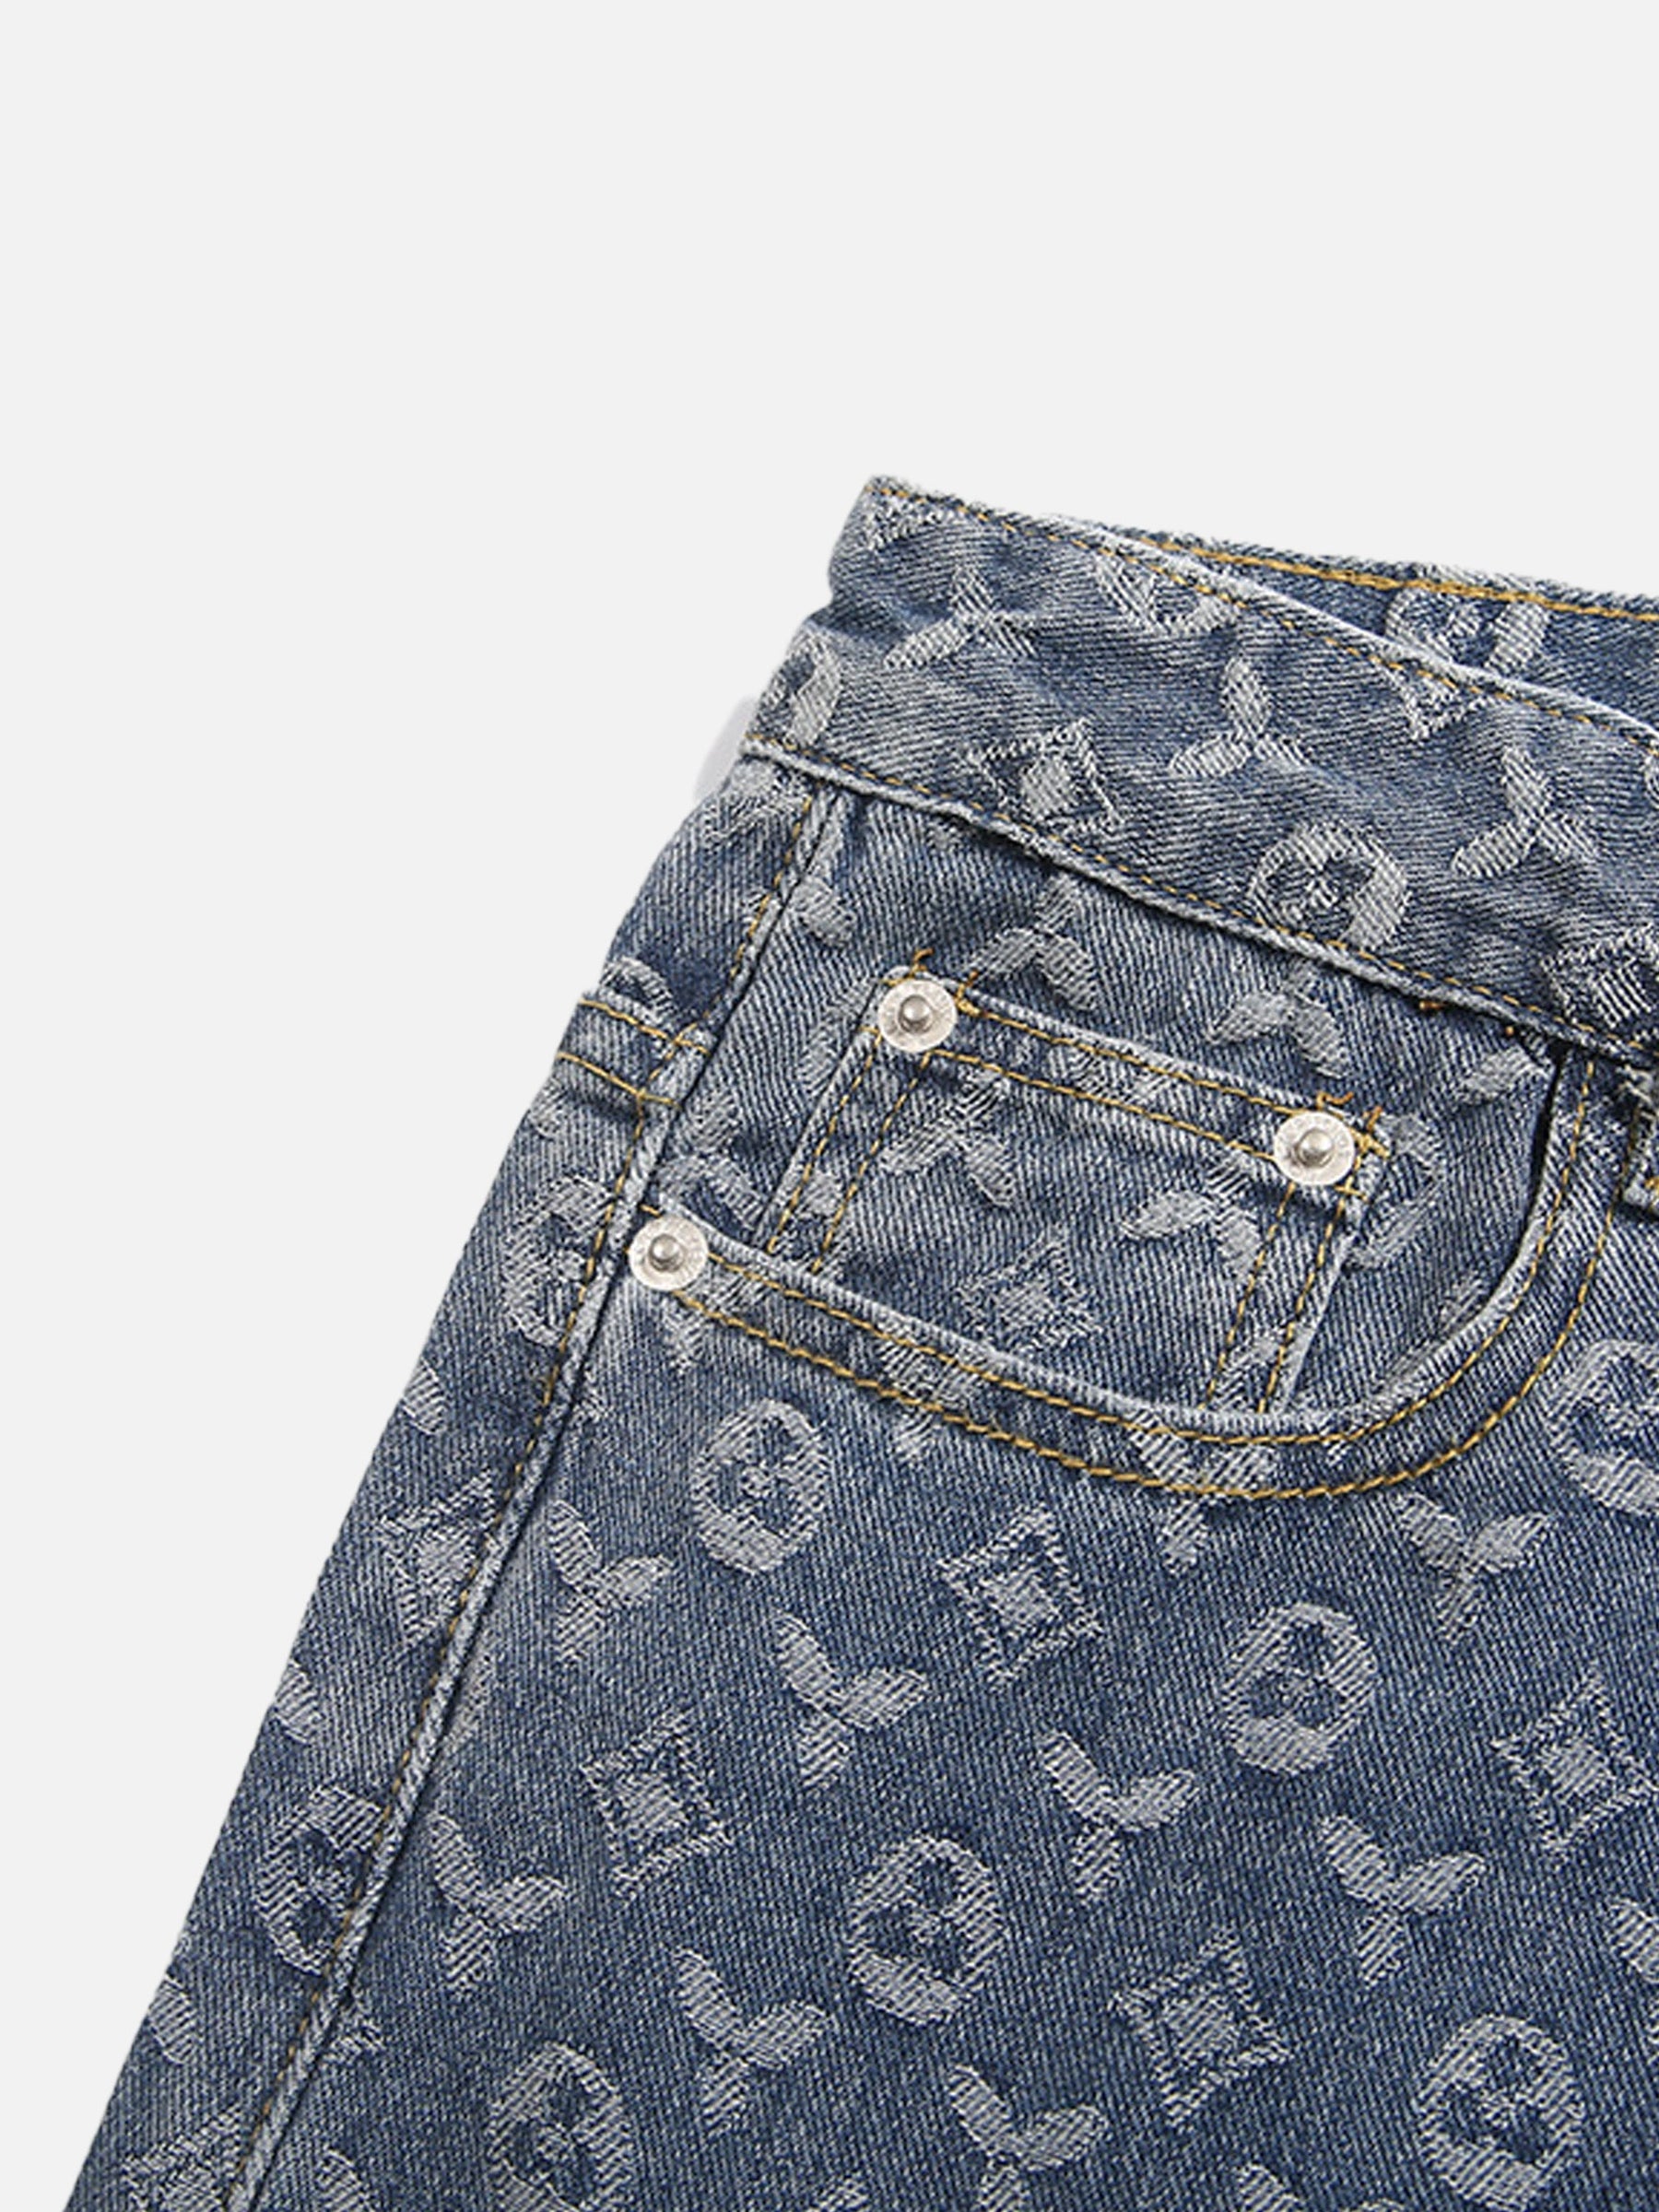 LUXENFY™ - High Street Jacquard Denim Jeans luxenfy.com